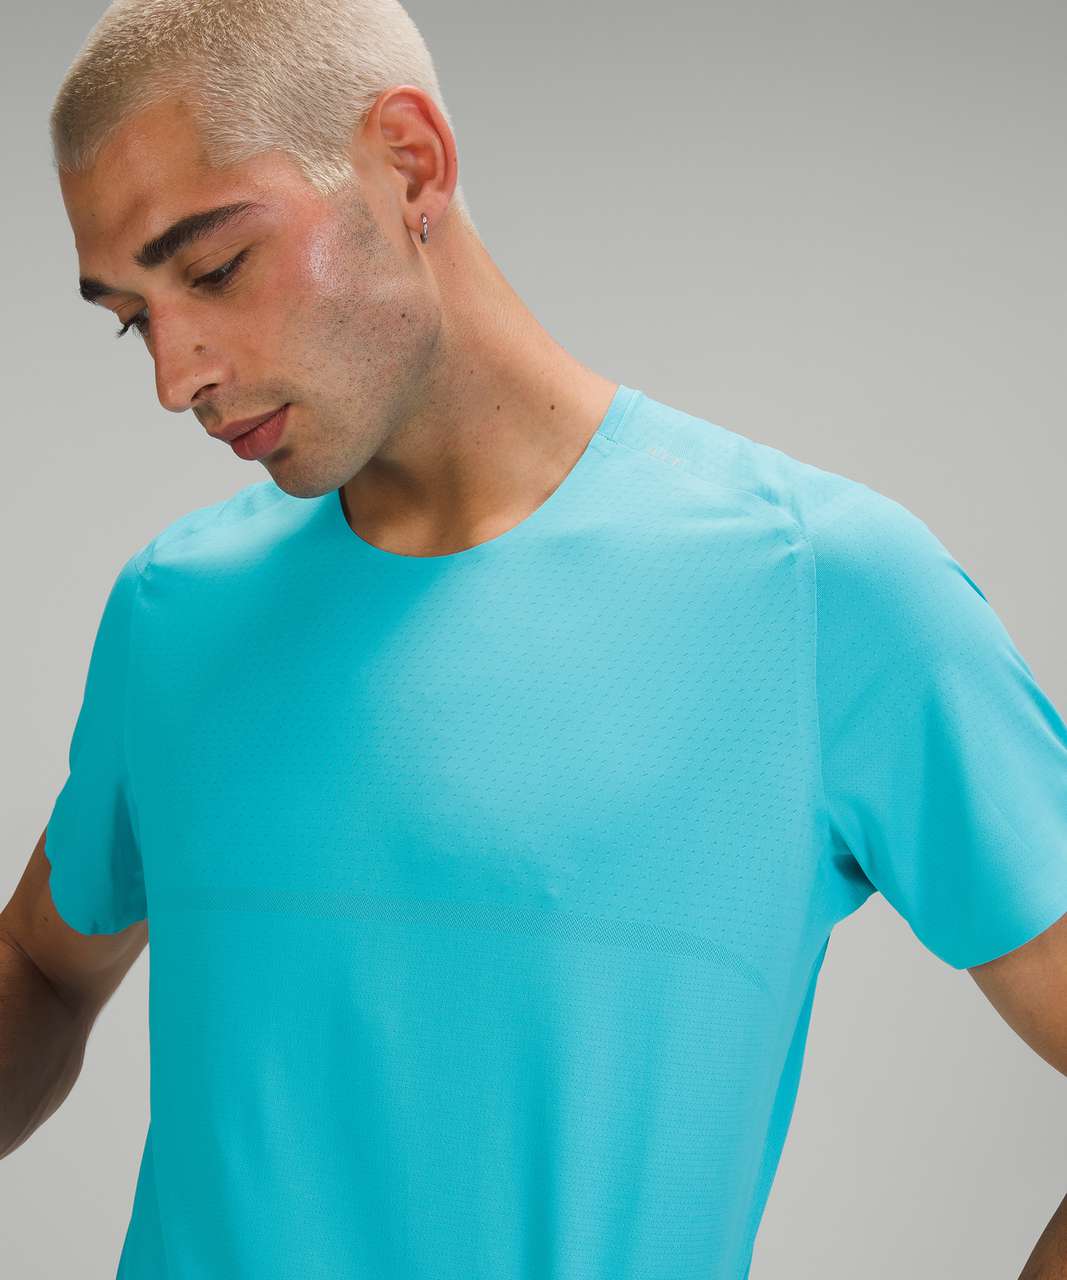 Lululemon Fast and Free Short Sleeve Shirt *Breathe - Electric Turquoise